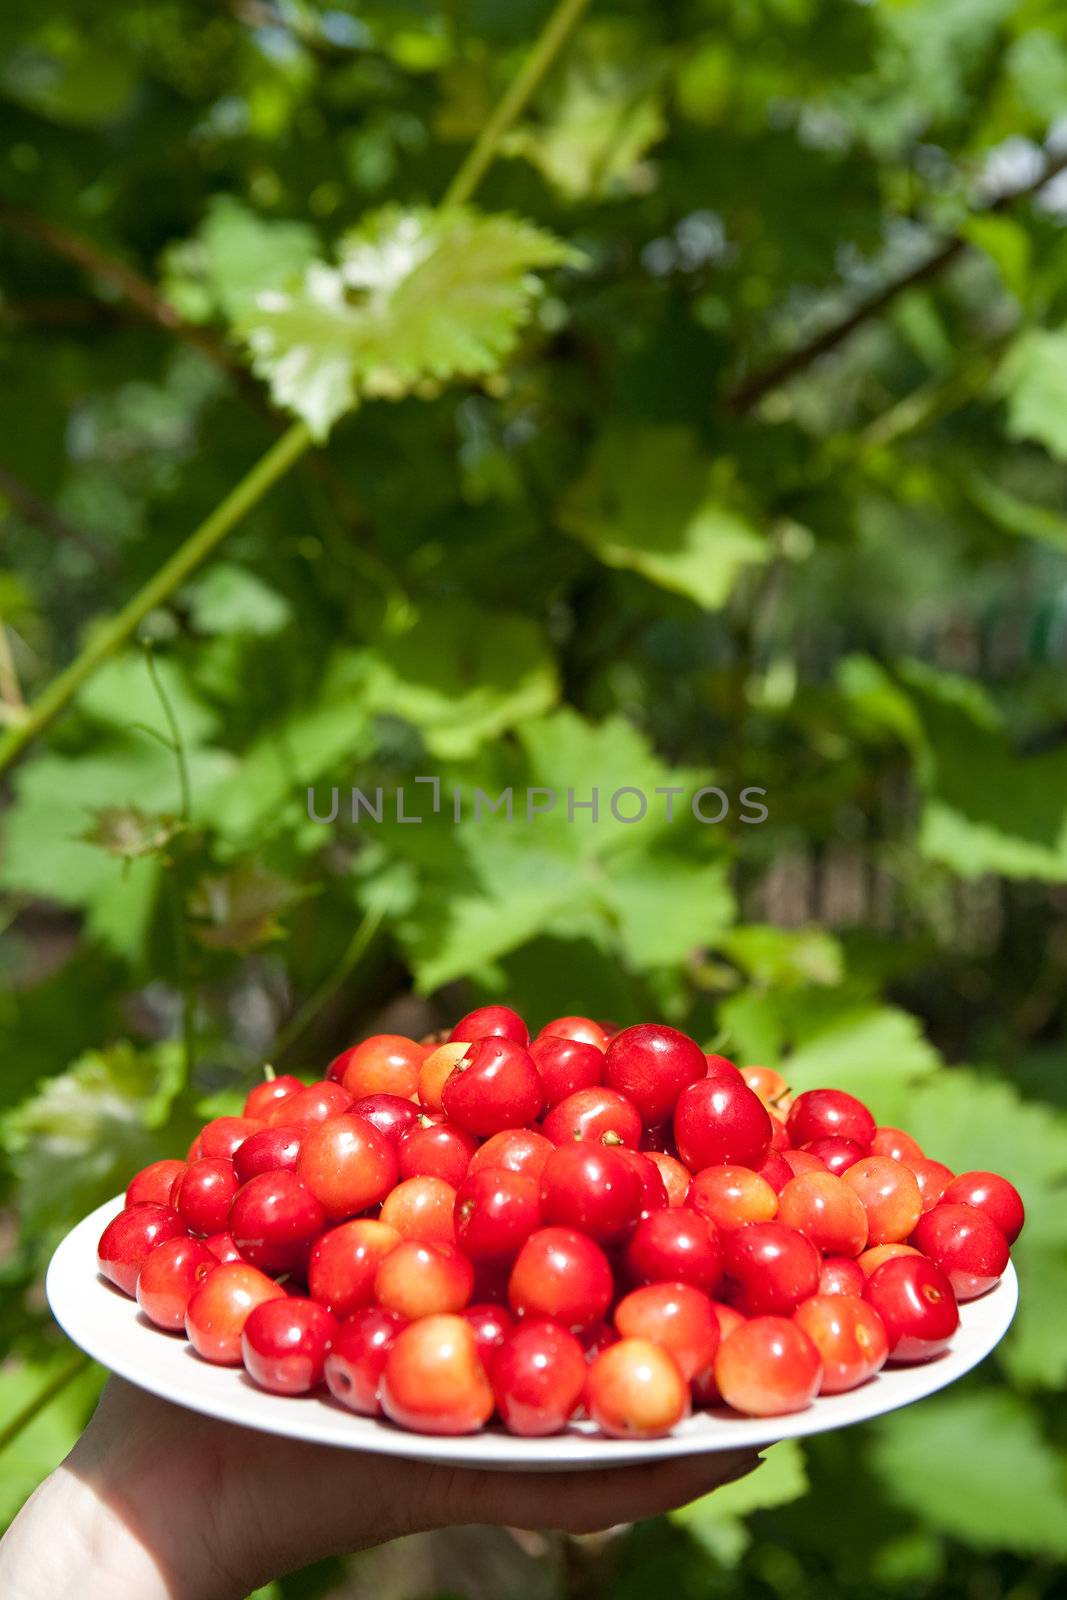 tasty cherries by vsurkov